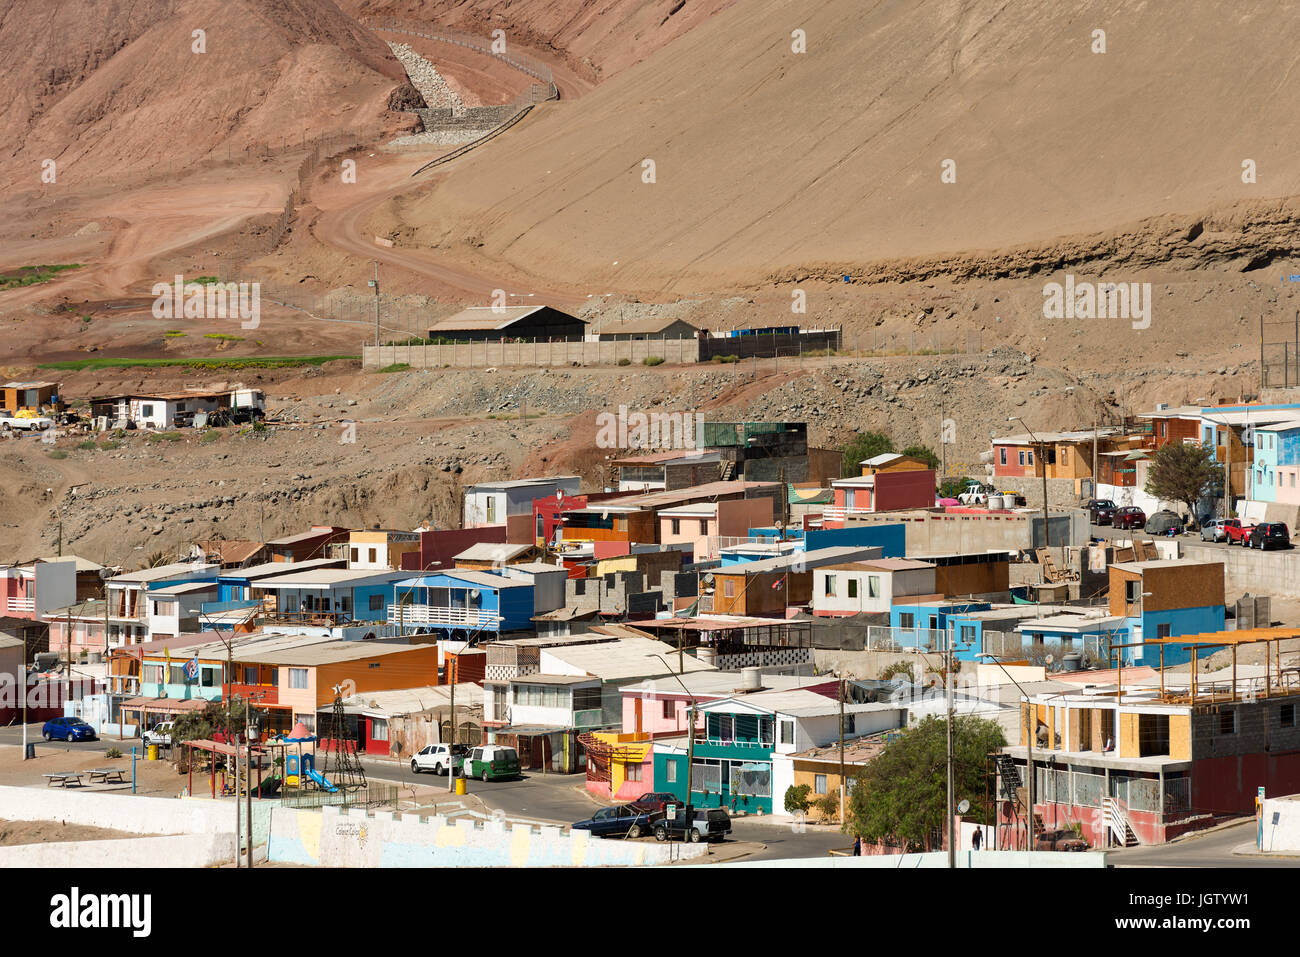 Antofagasta, Chili, région d'Antofagasta - Caleta Coloso, un petit groupe de maisons au sud de la ville d'Antofagasta, près du port Banque D'Images